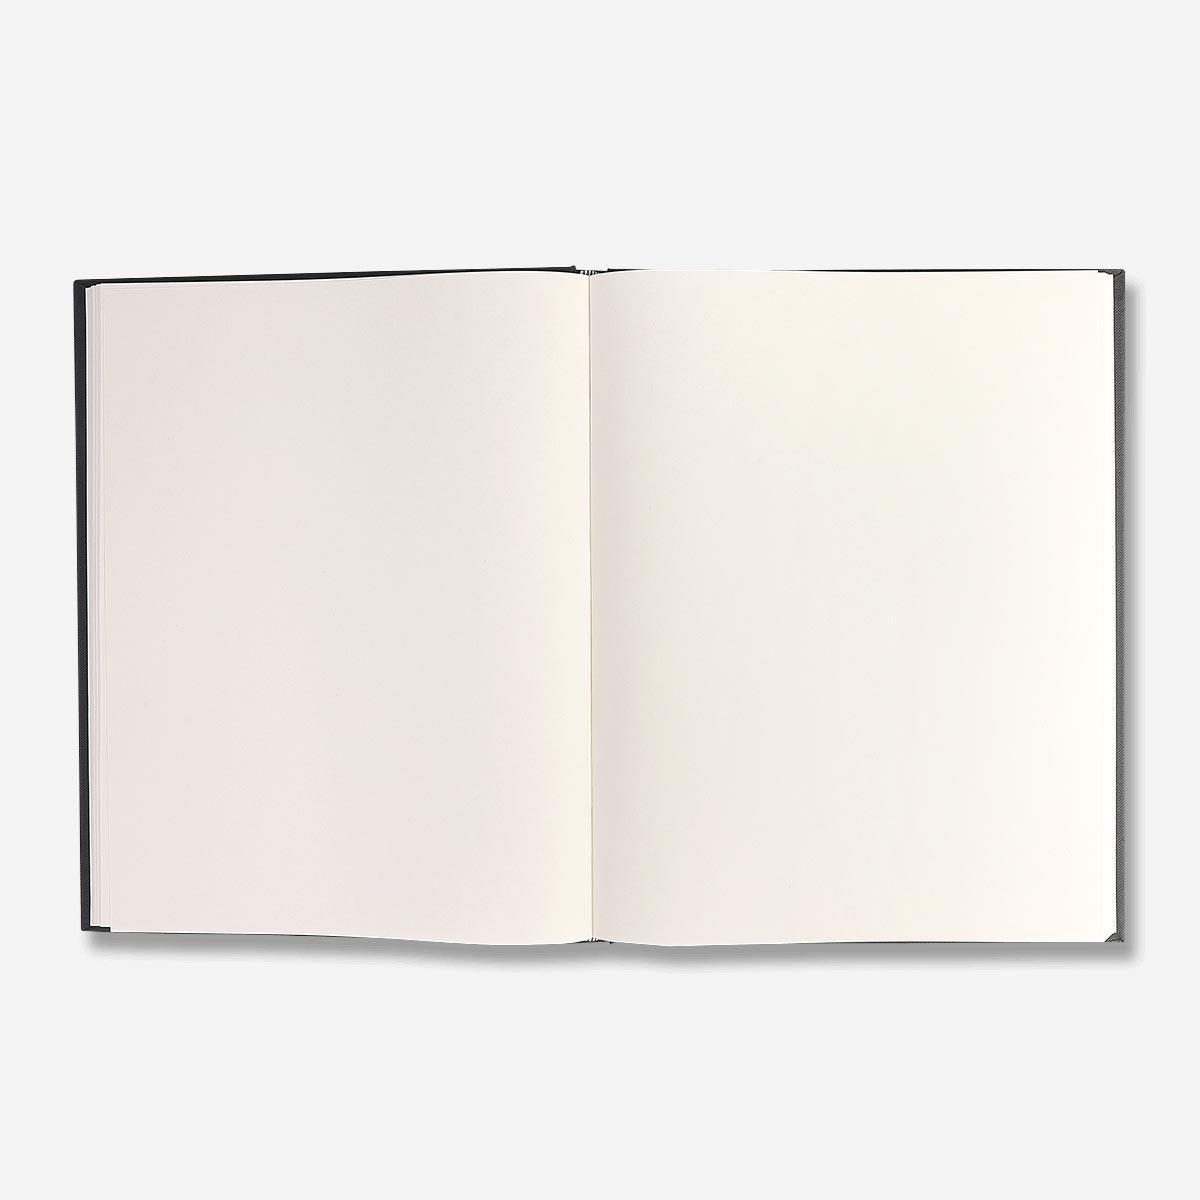 Black hard cover sketchbook. a3